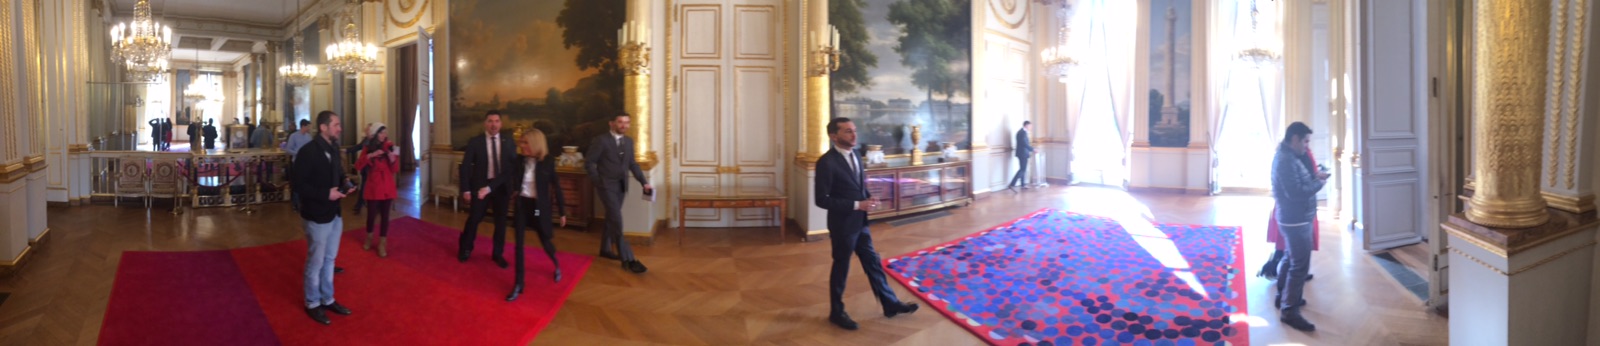 Flavien Durand était invité par le Président Macron